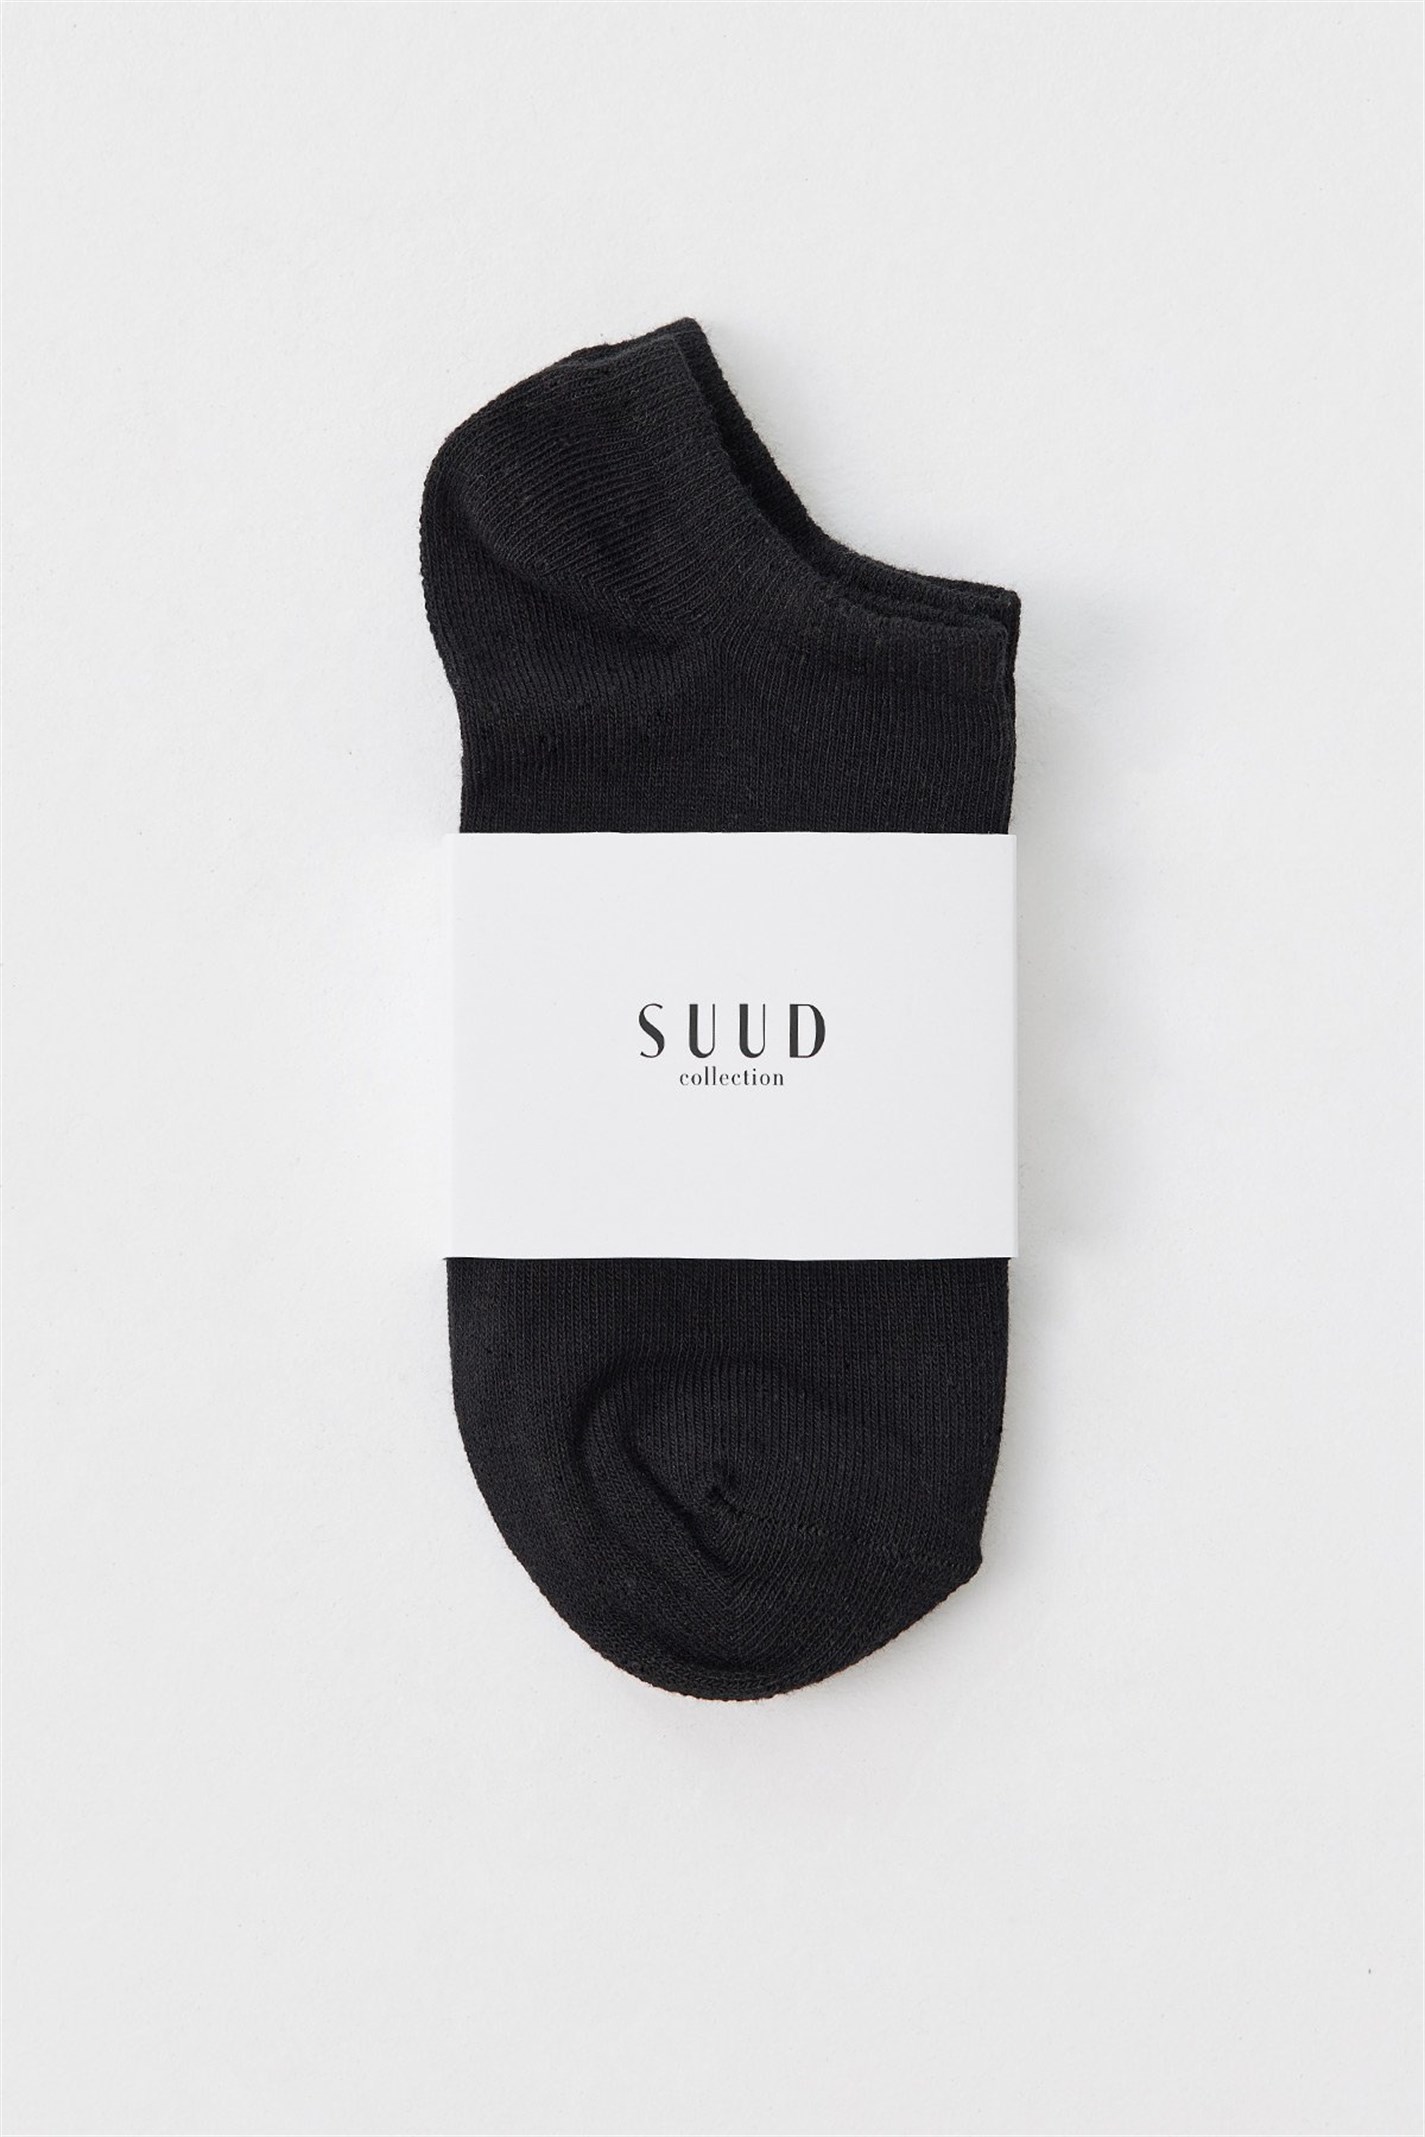 Siyah Pamuklu Patik Çorap | Suud Collection